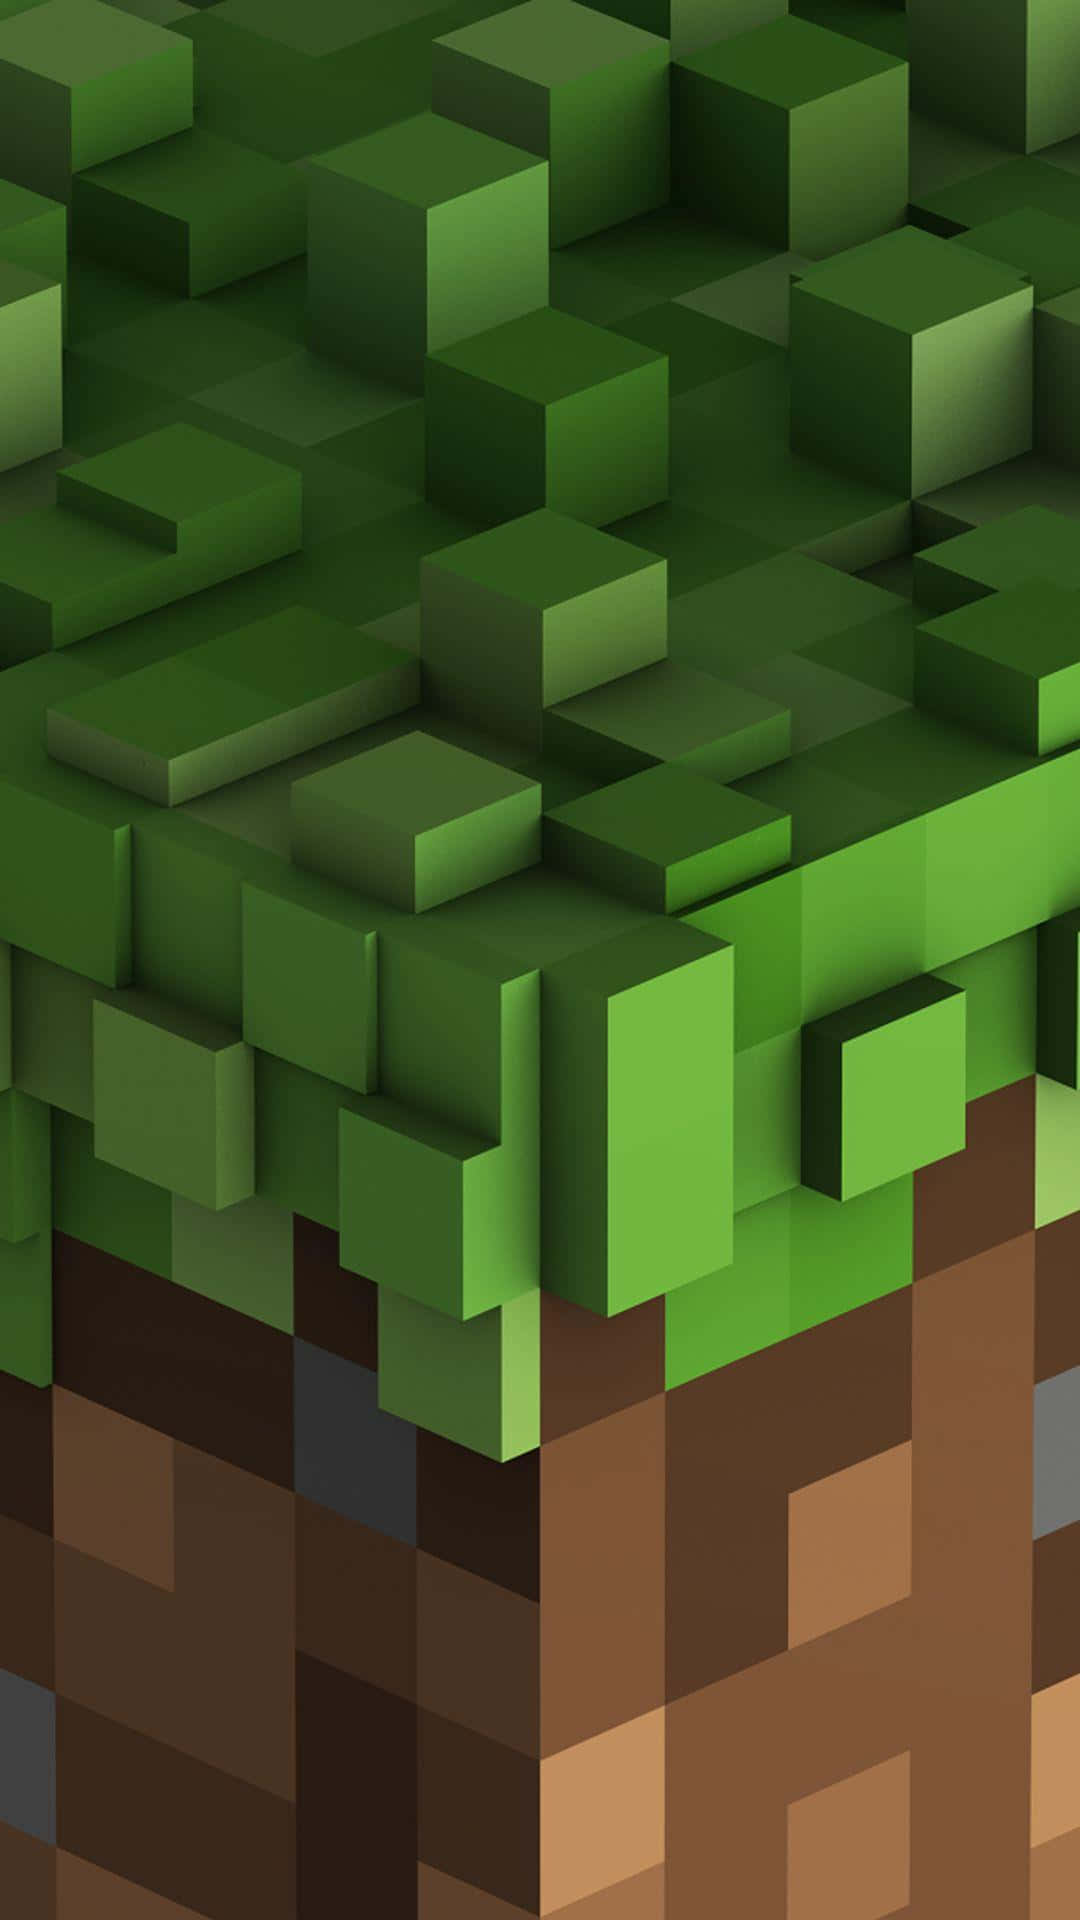 Fondode Pantalla De Minecraft Con Cubos De Hierba Para Pixel 3xl.